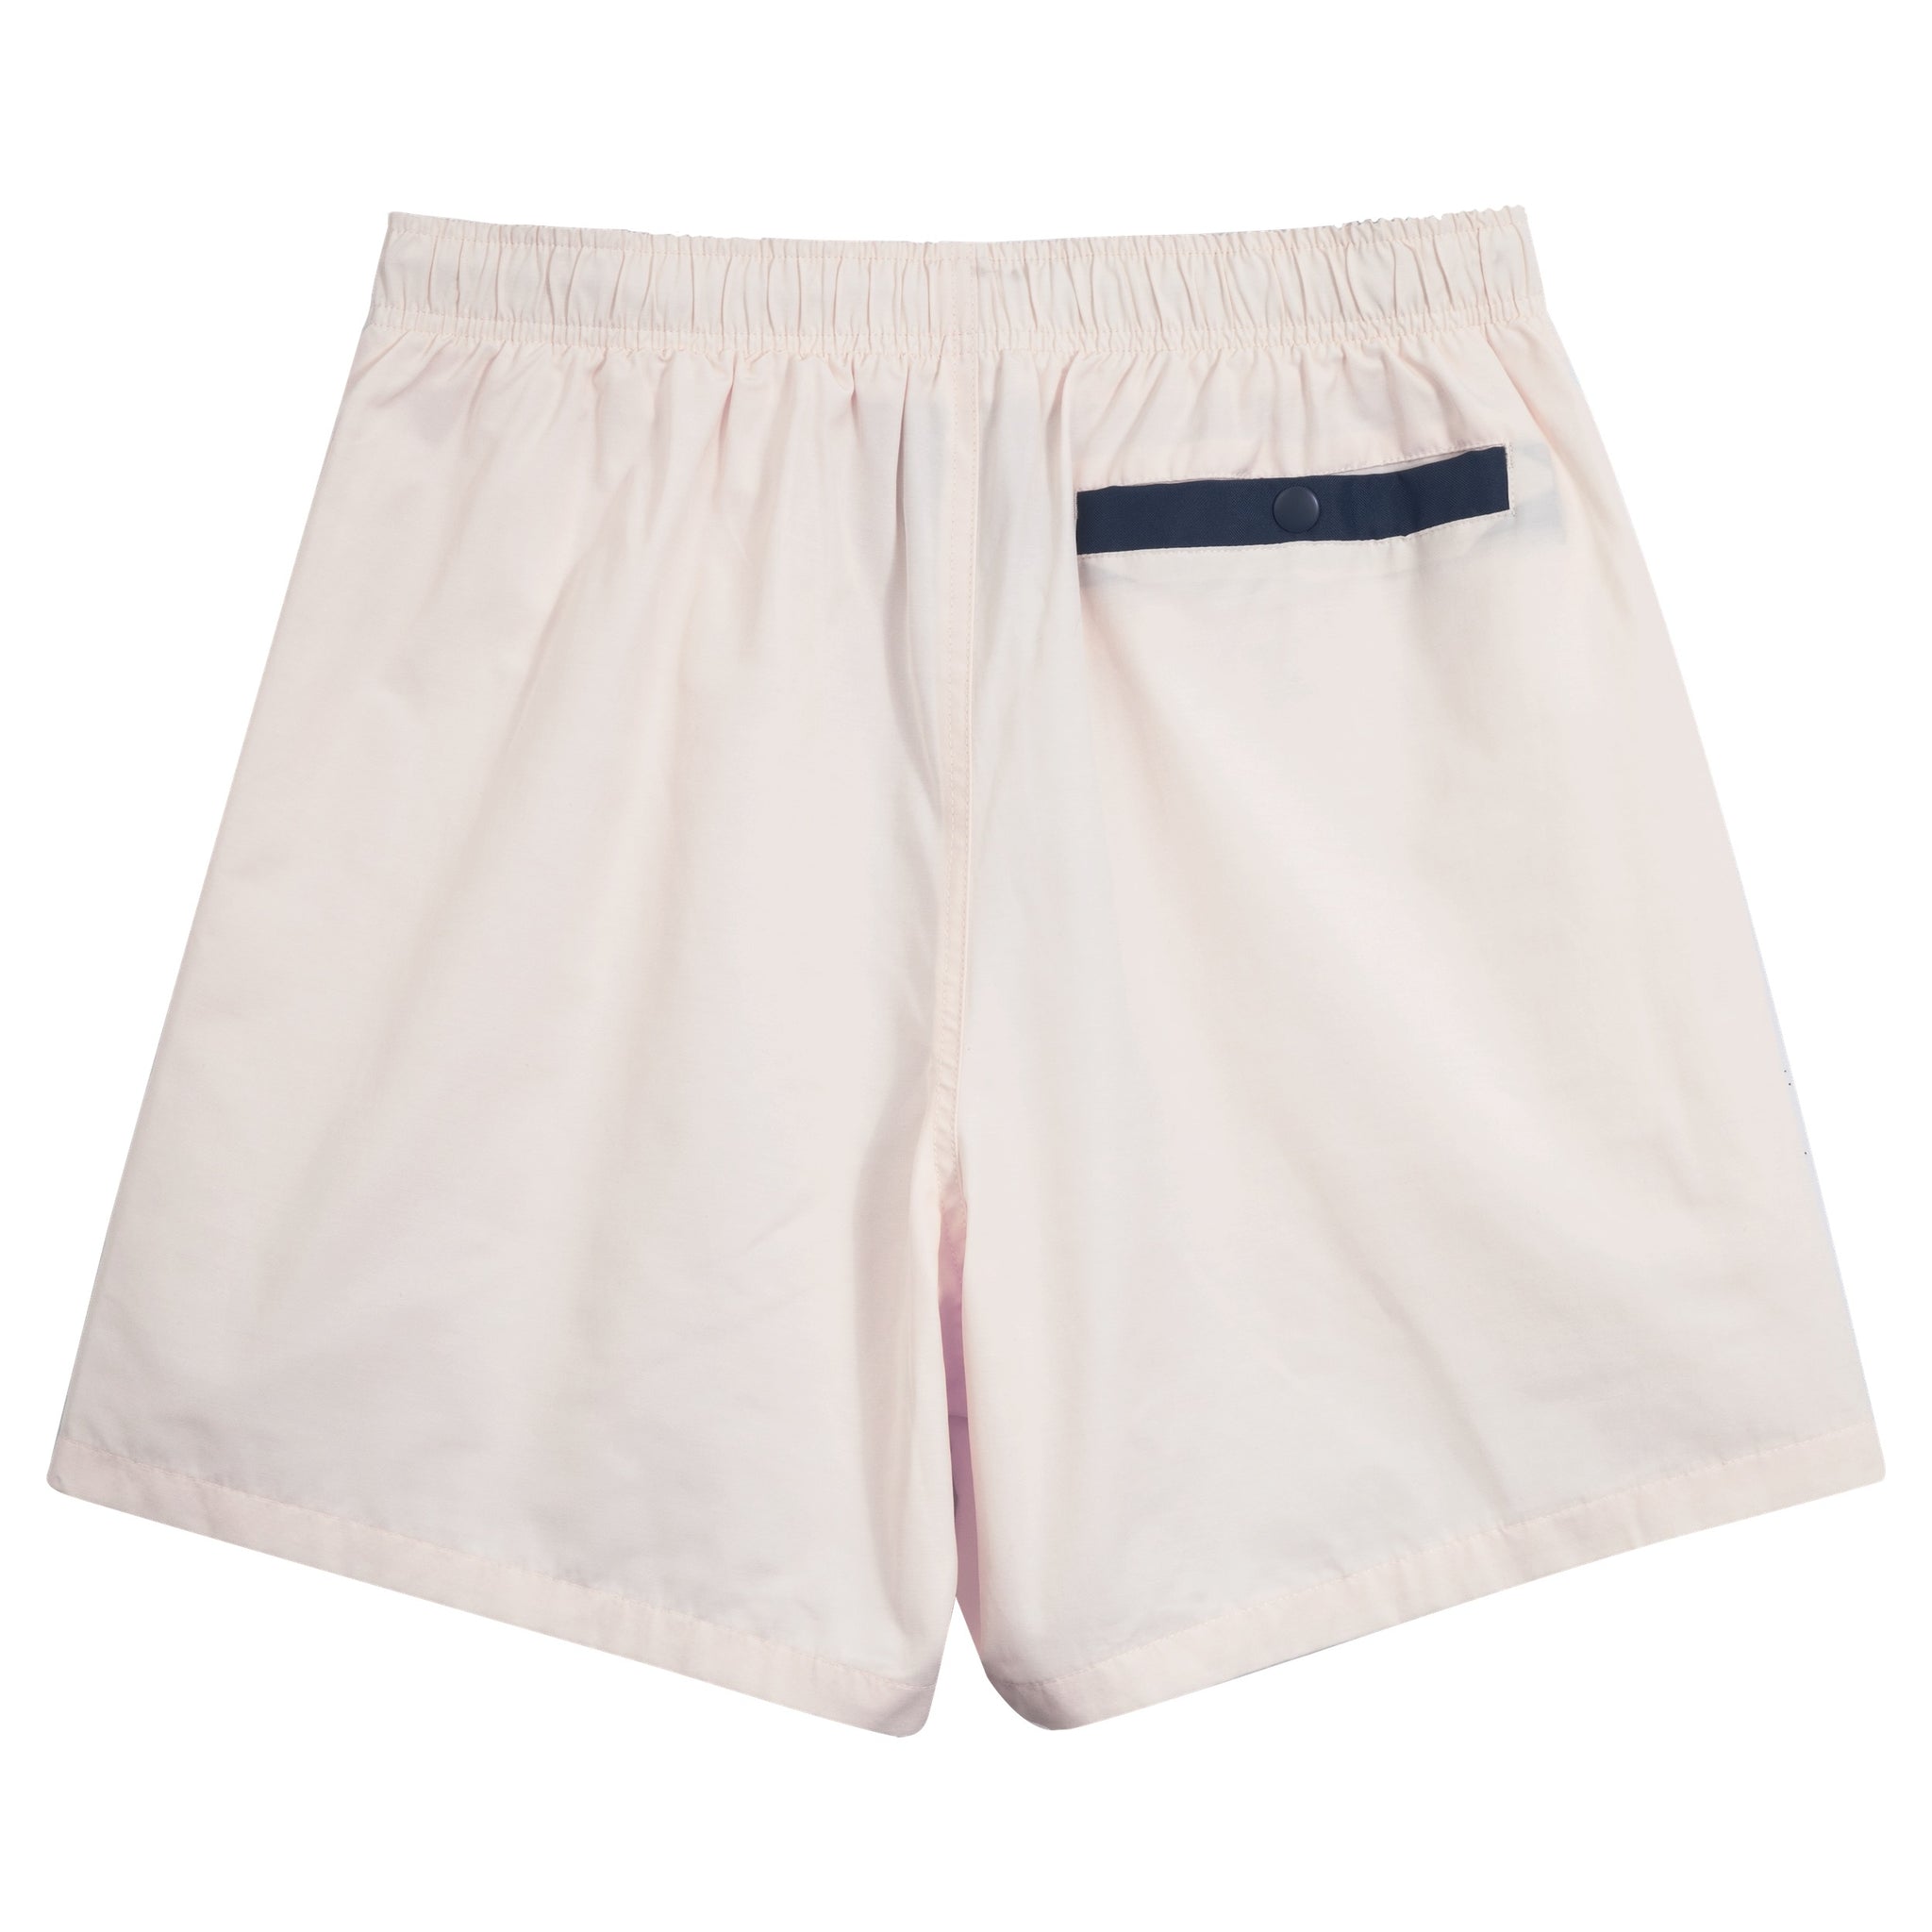 Deliverance Shorts - Cream